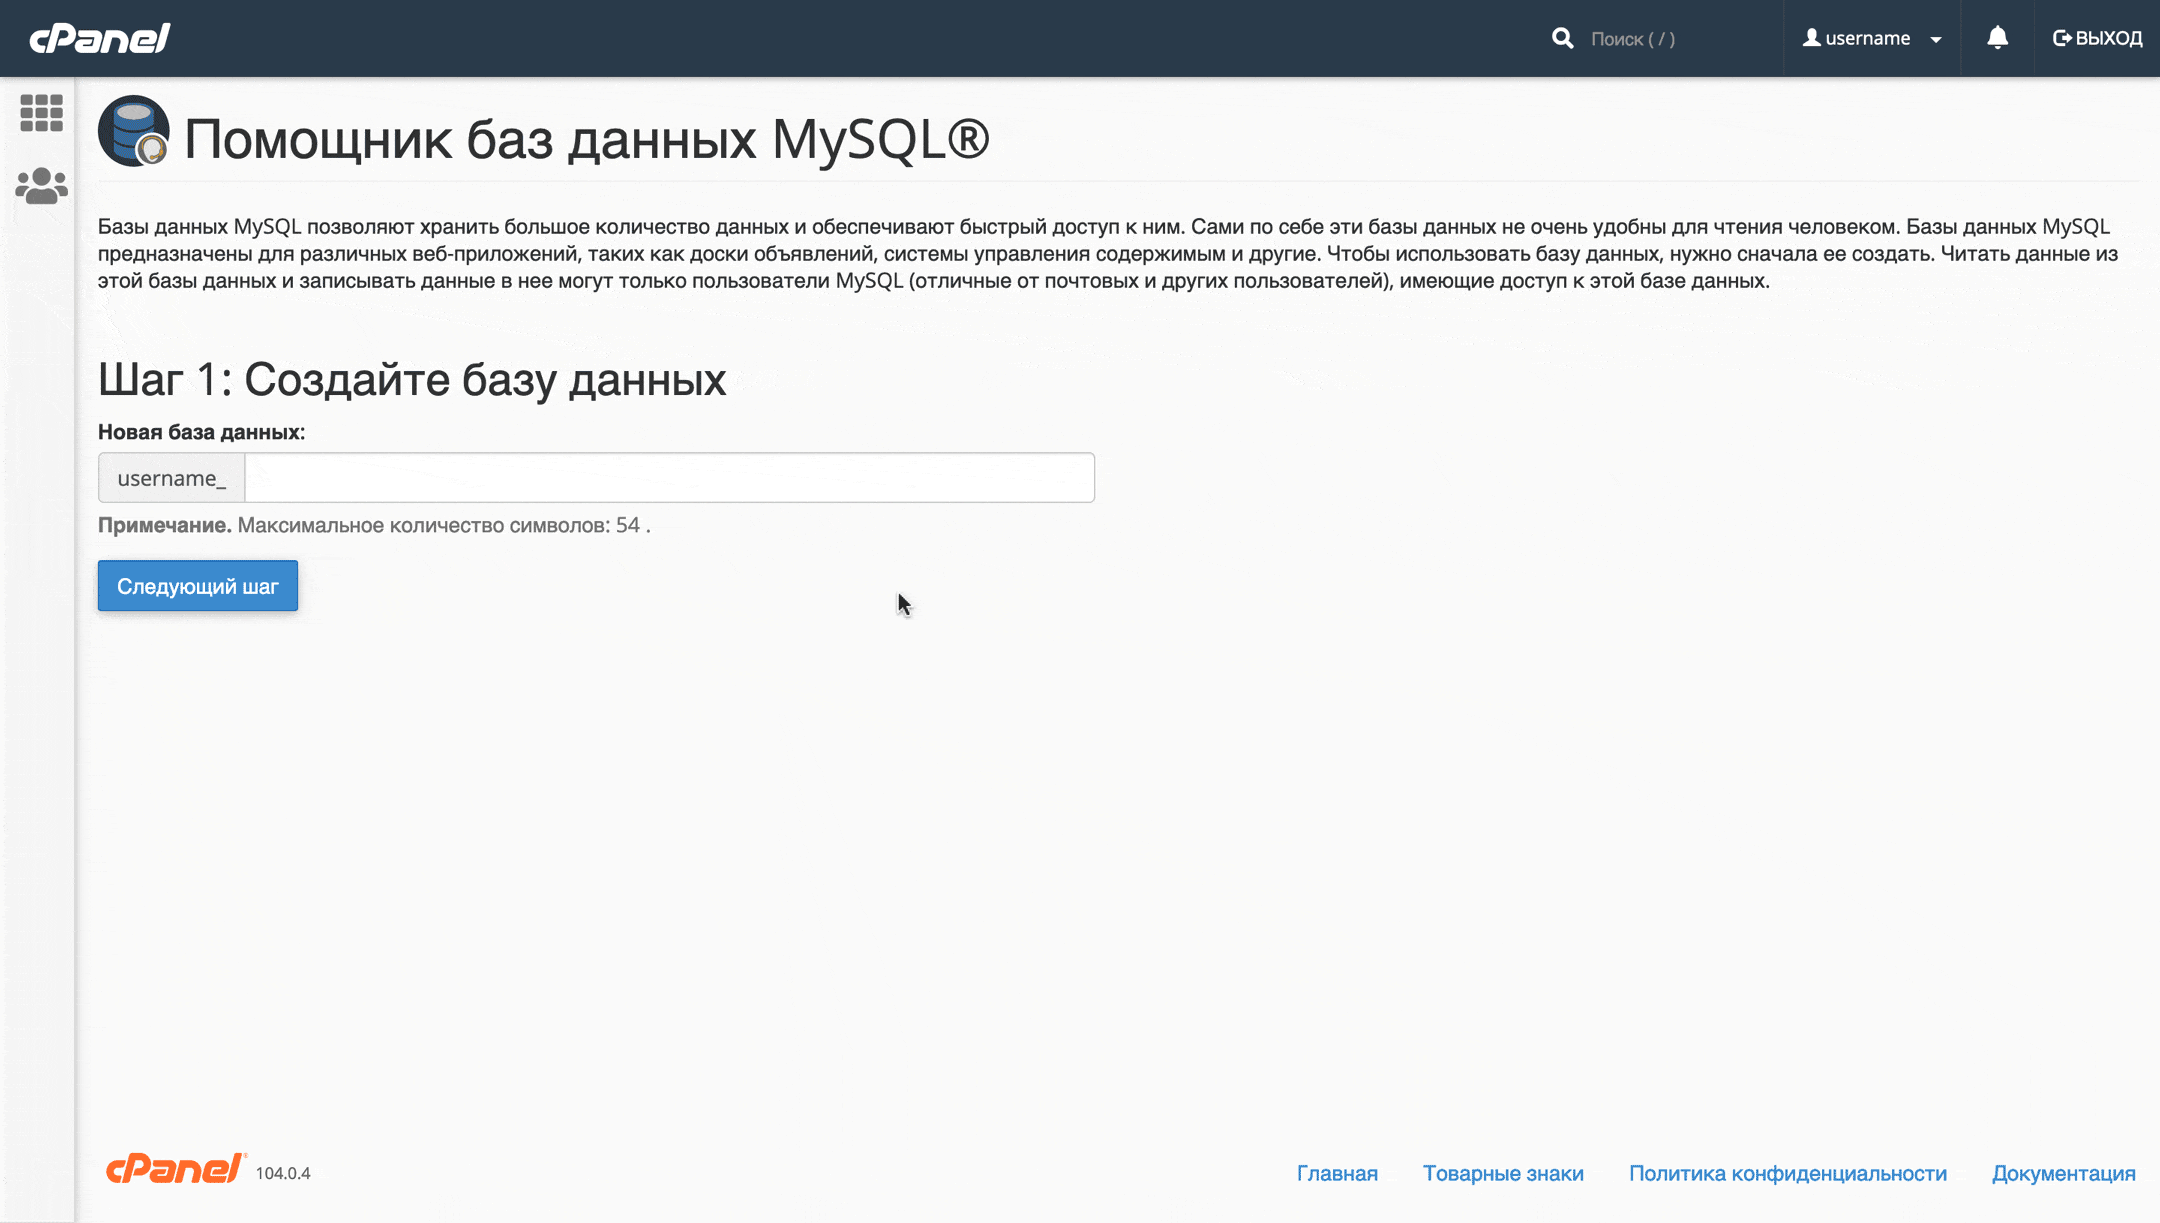 Как сменить хостинг сайта — Создание базы данных MySQL в cPanel